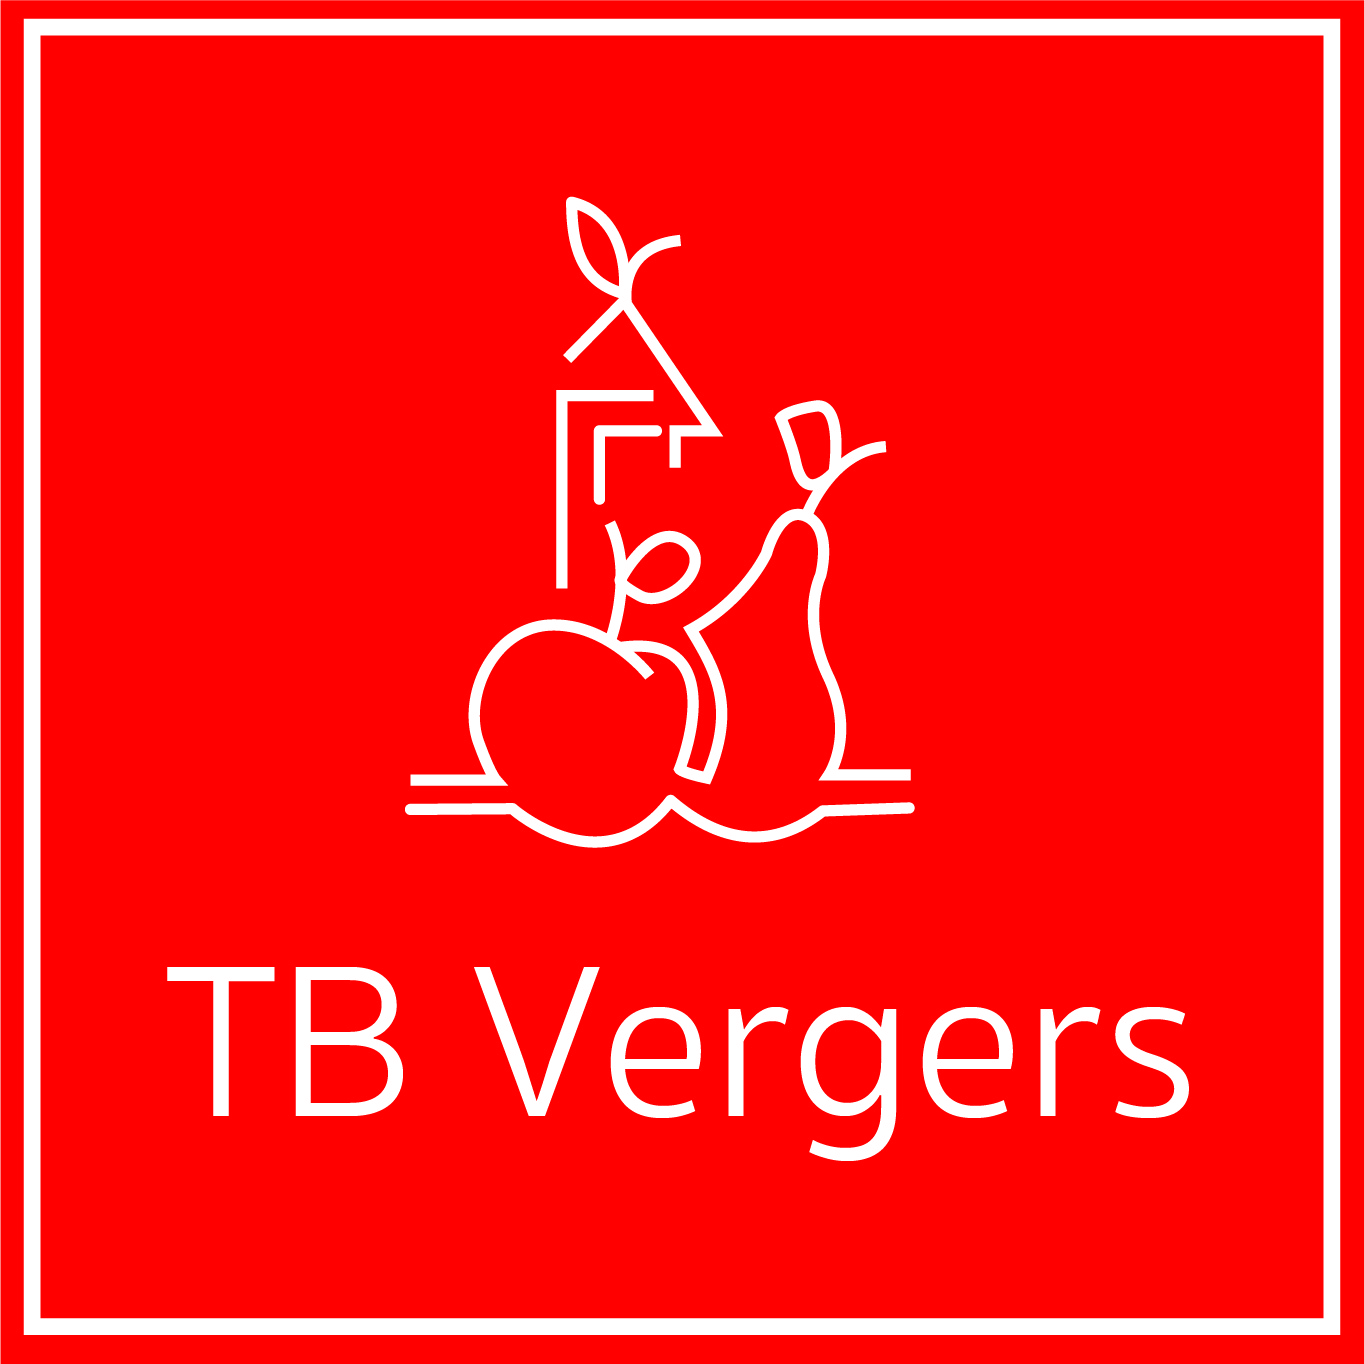 T&B vergers